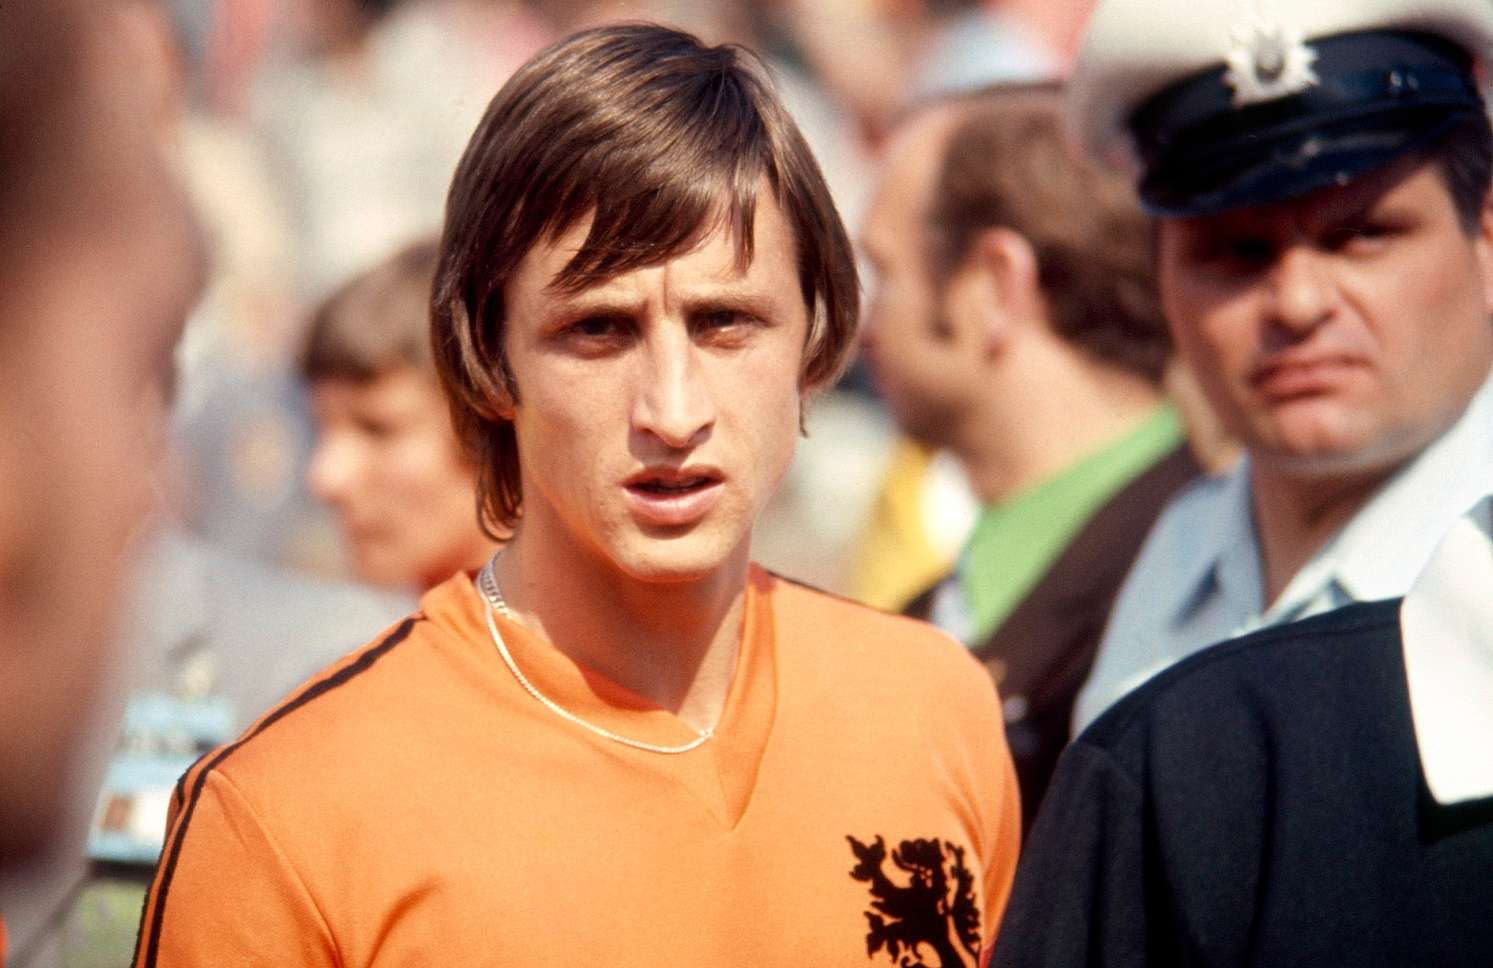 Johan Cruyff Netherlands 1974 FIFA World Cup